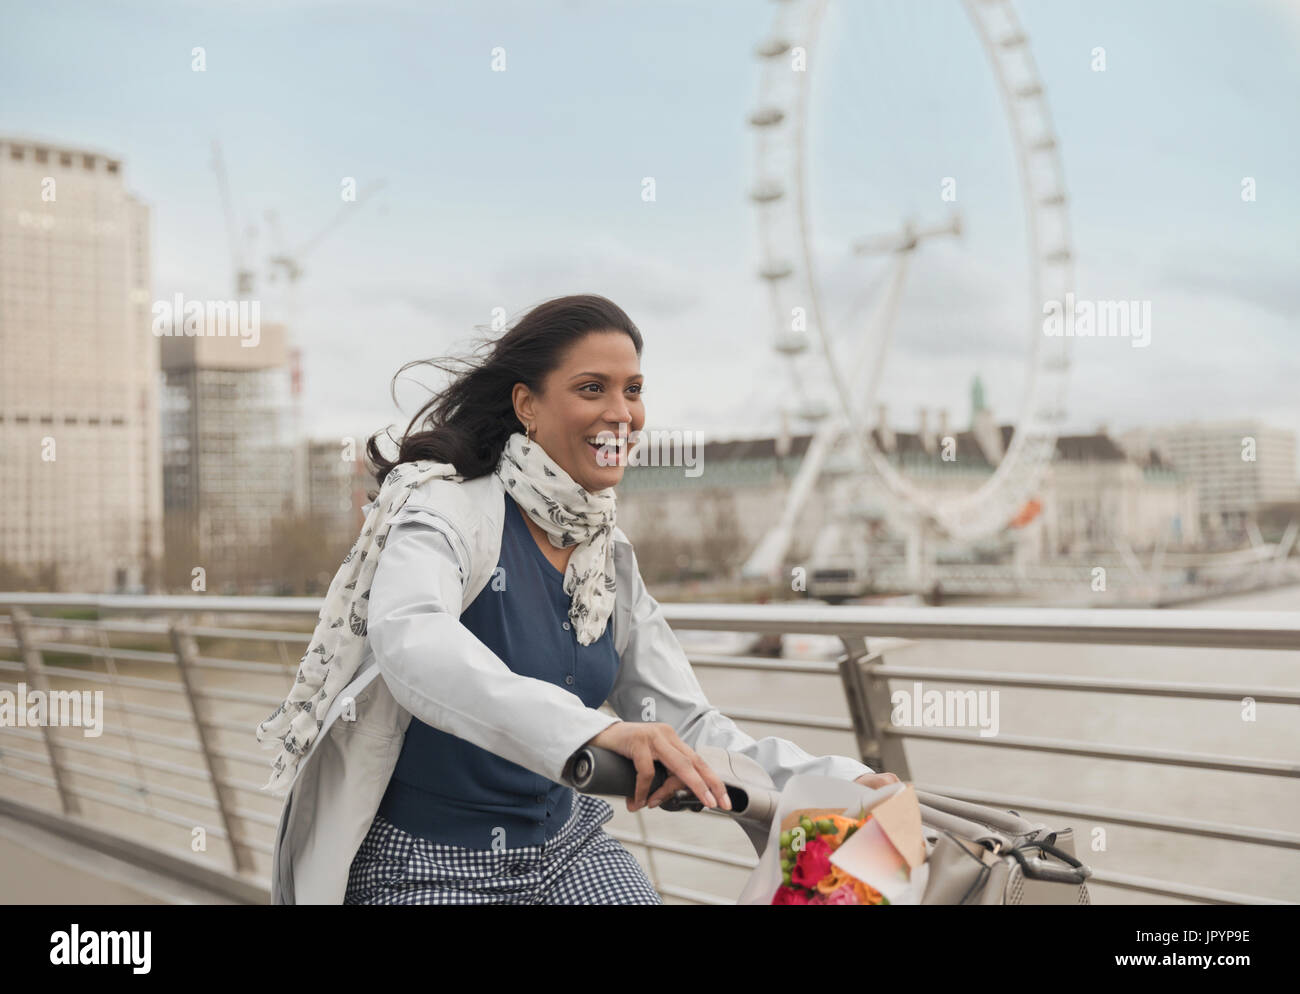 Femme souriante, enthousiaste du vélo sur le pont près de roue du millénaire, London, UK Banque D'Images